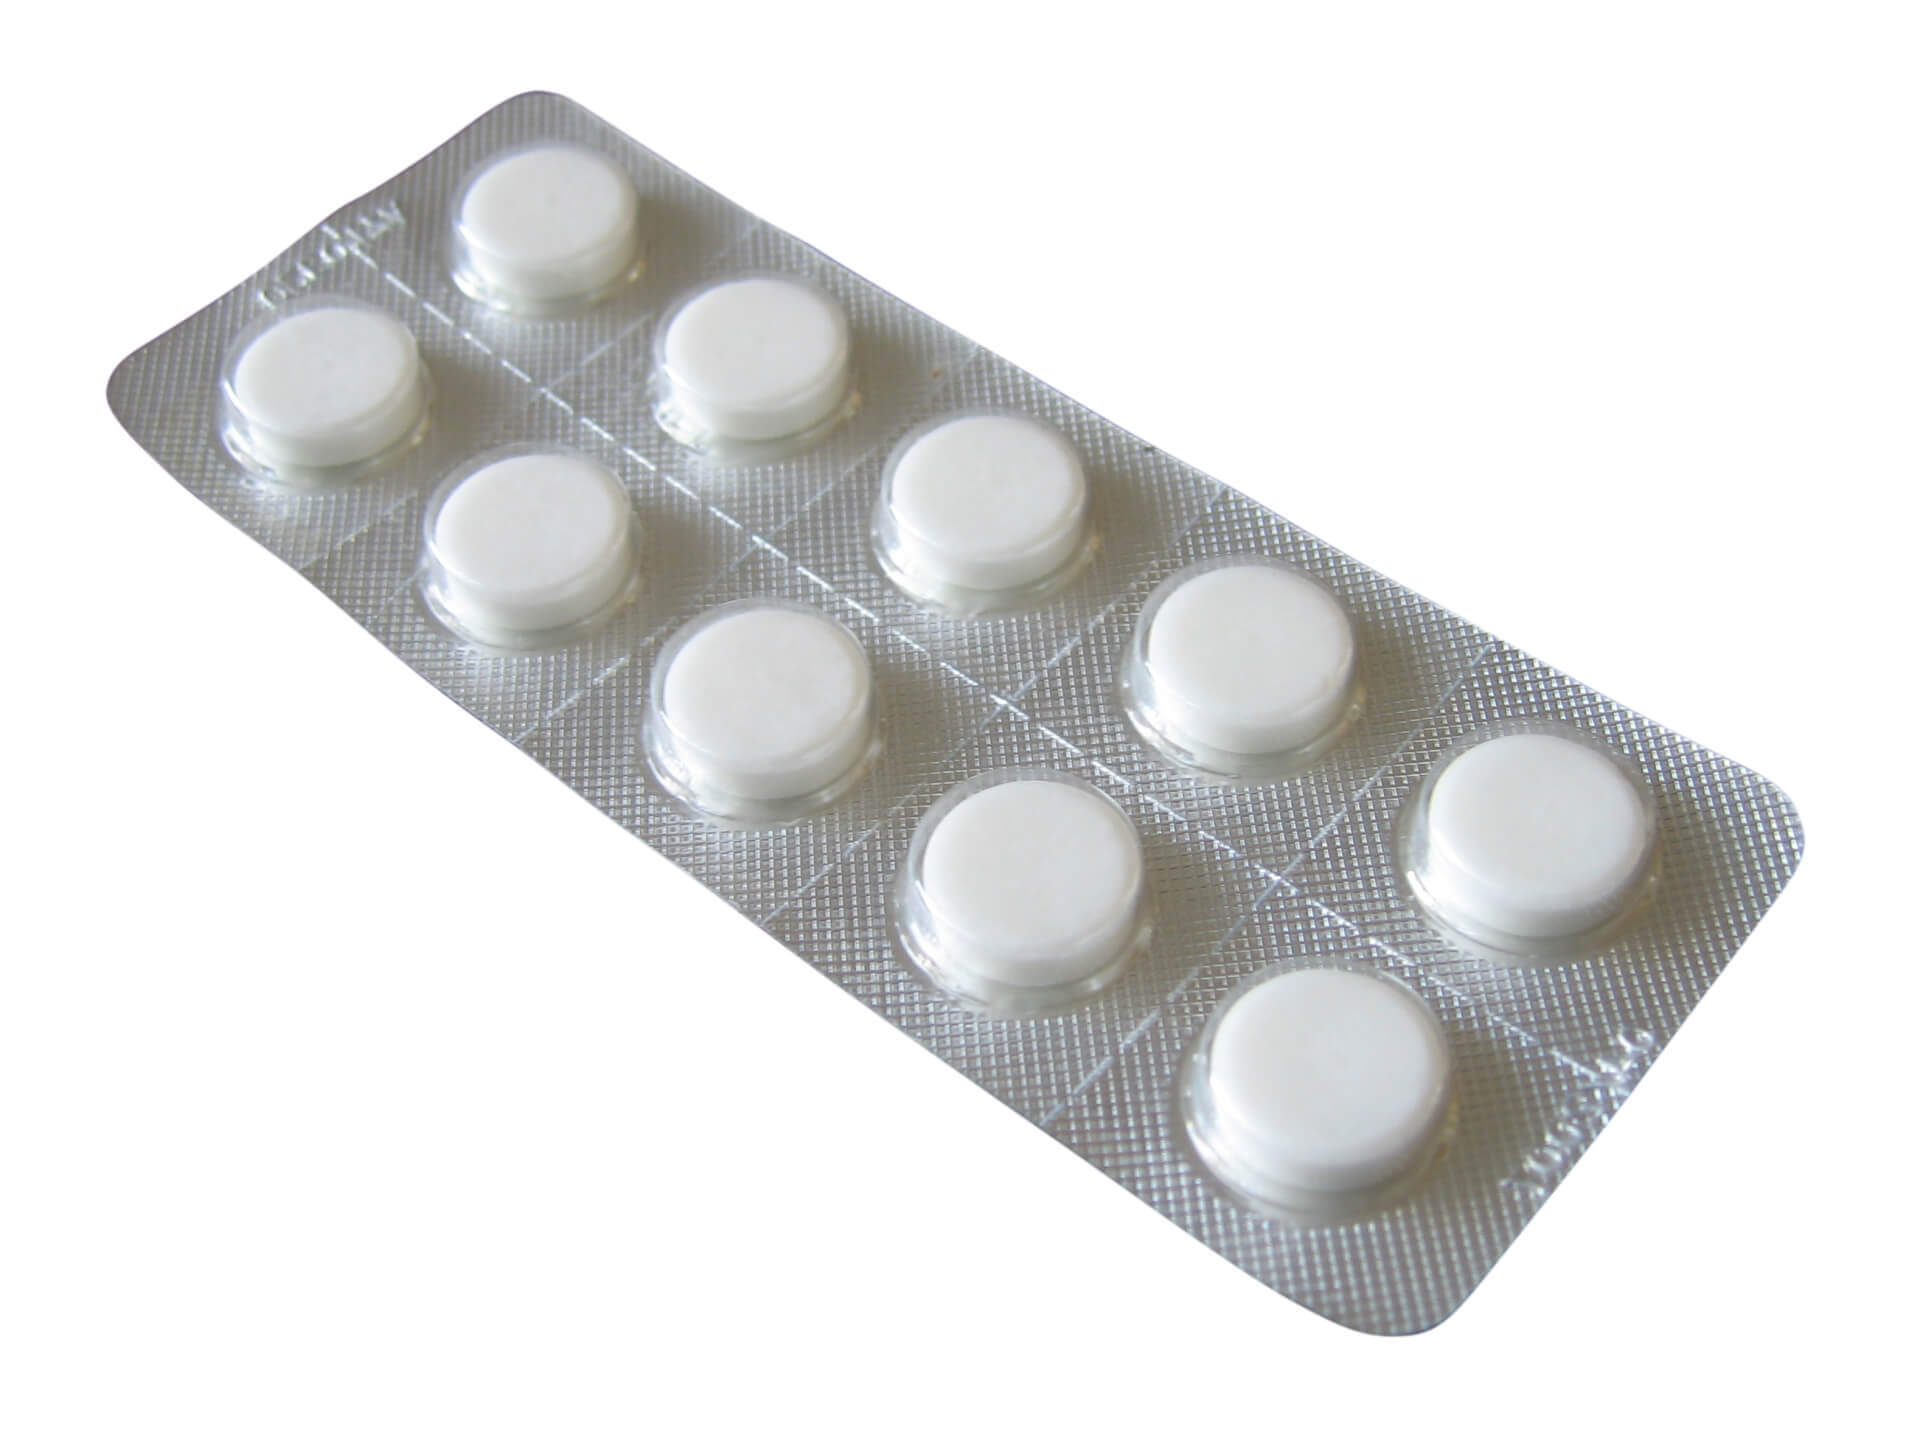 Afbeeldingsresultaat voor aspirine